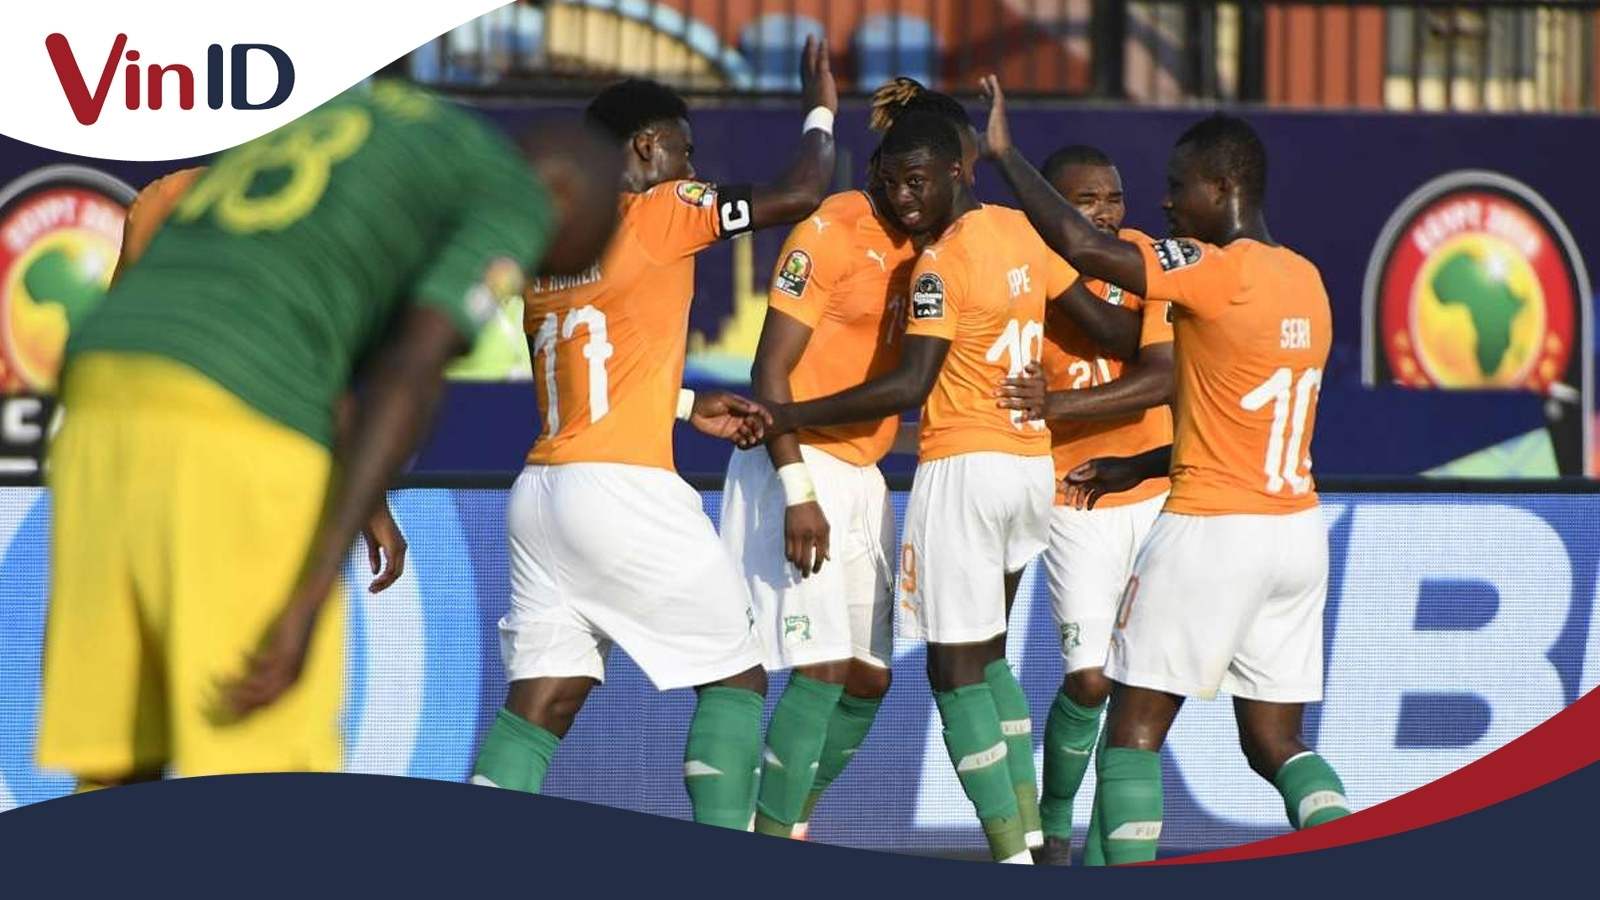 Diễn biến vòng loại World Cup khu vực châu Phi: Lịch thi đấu, bảng xếp hạng